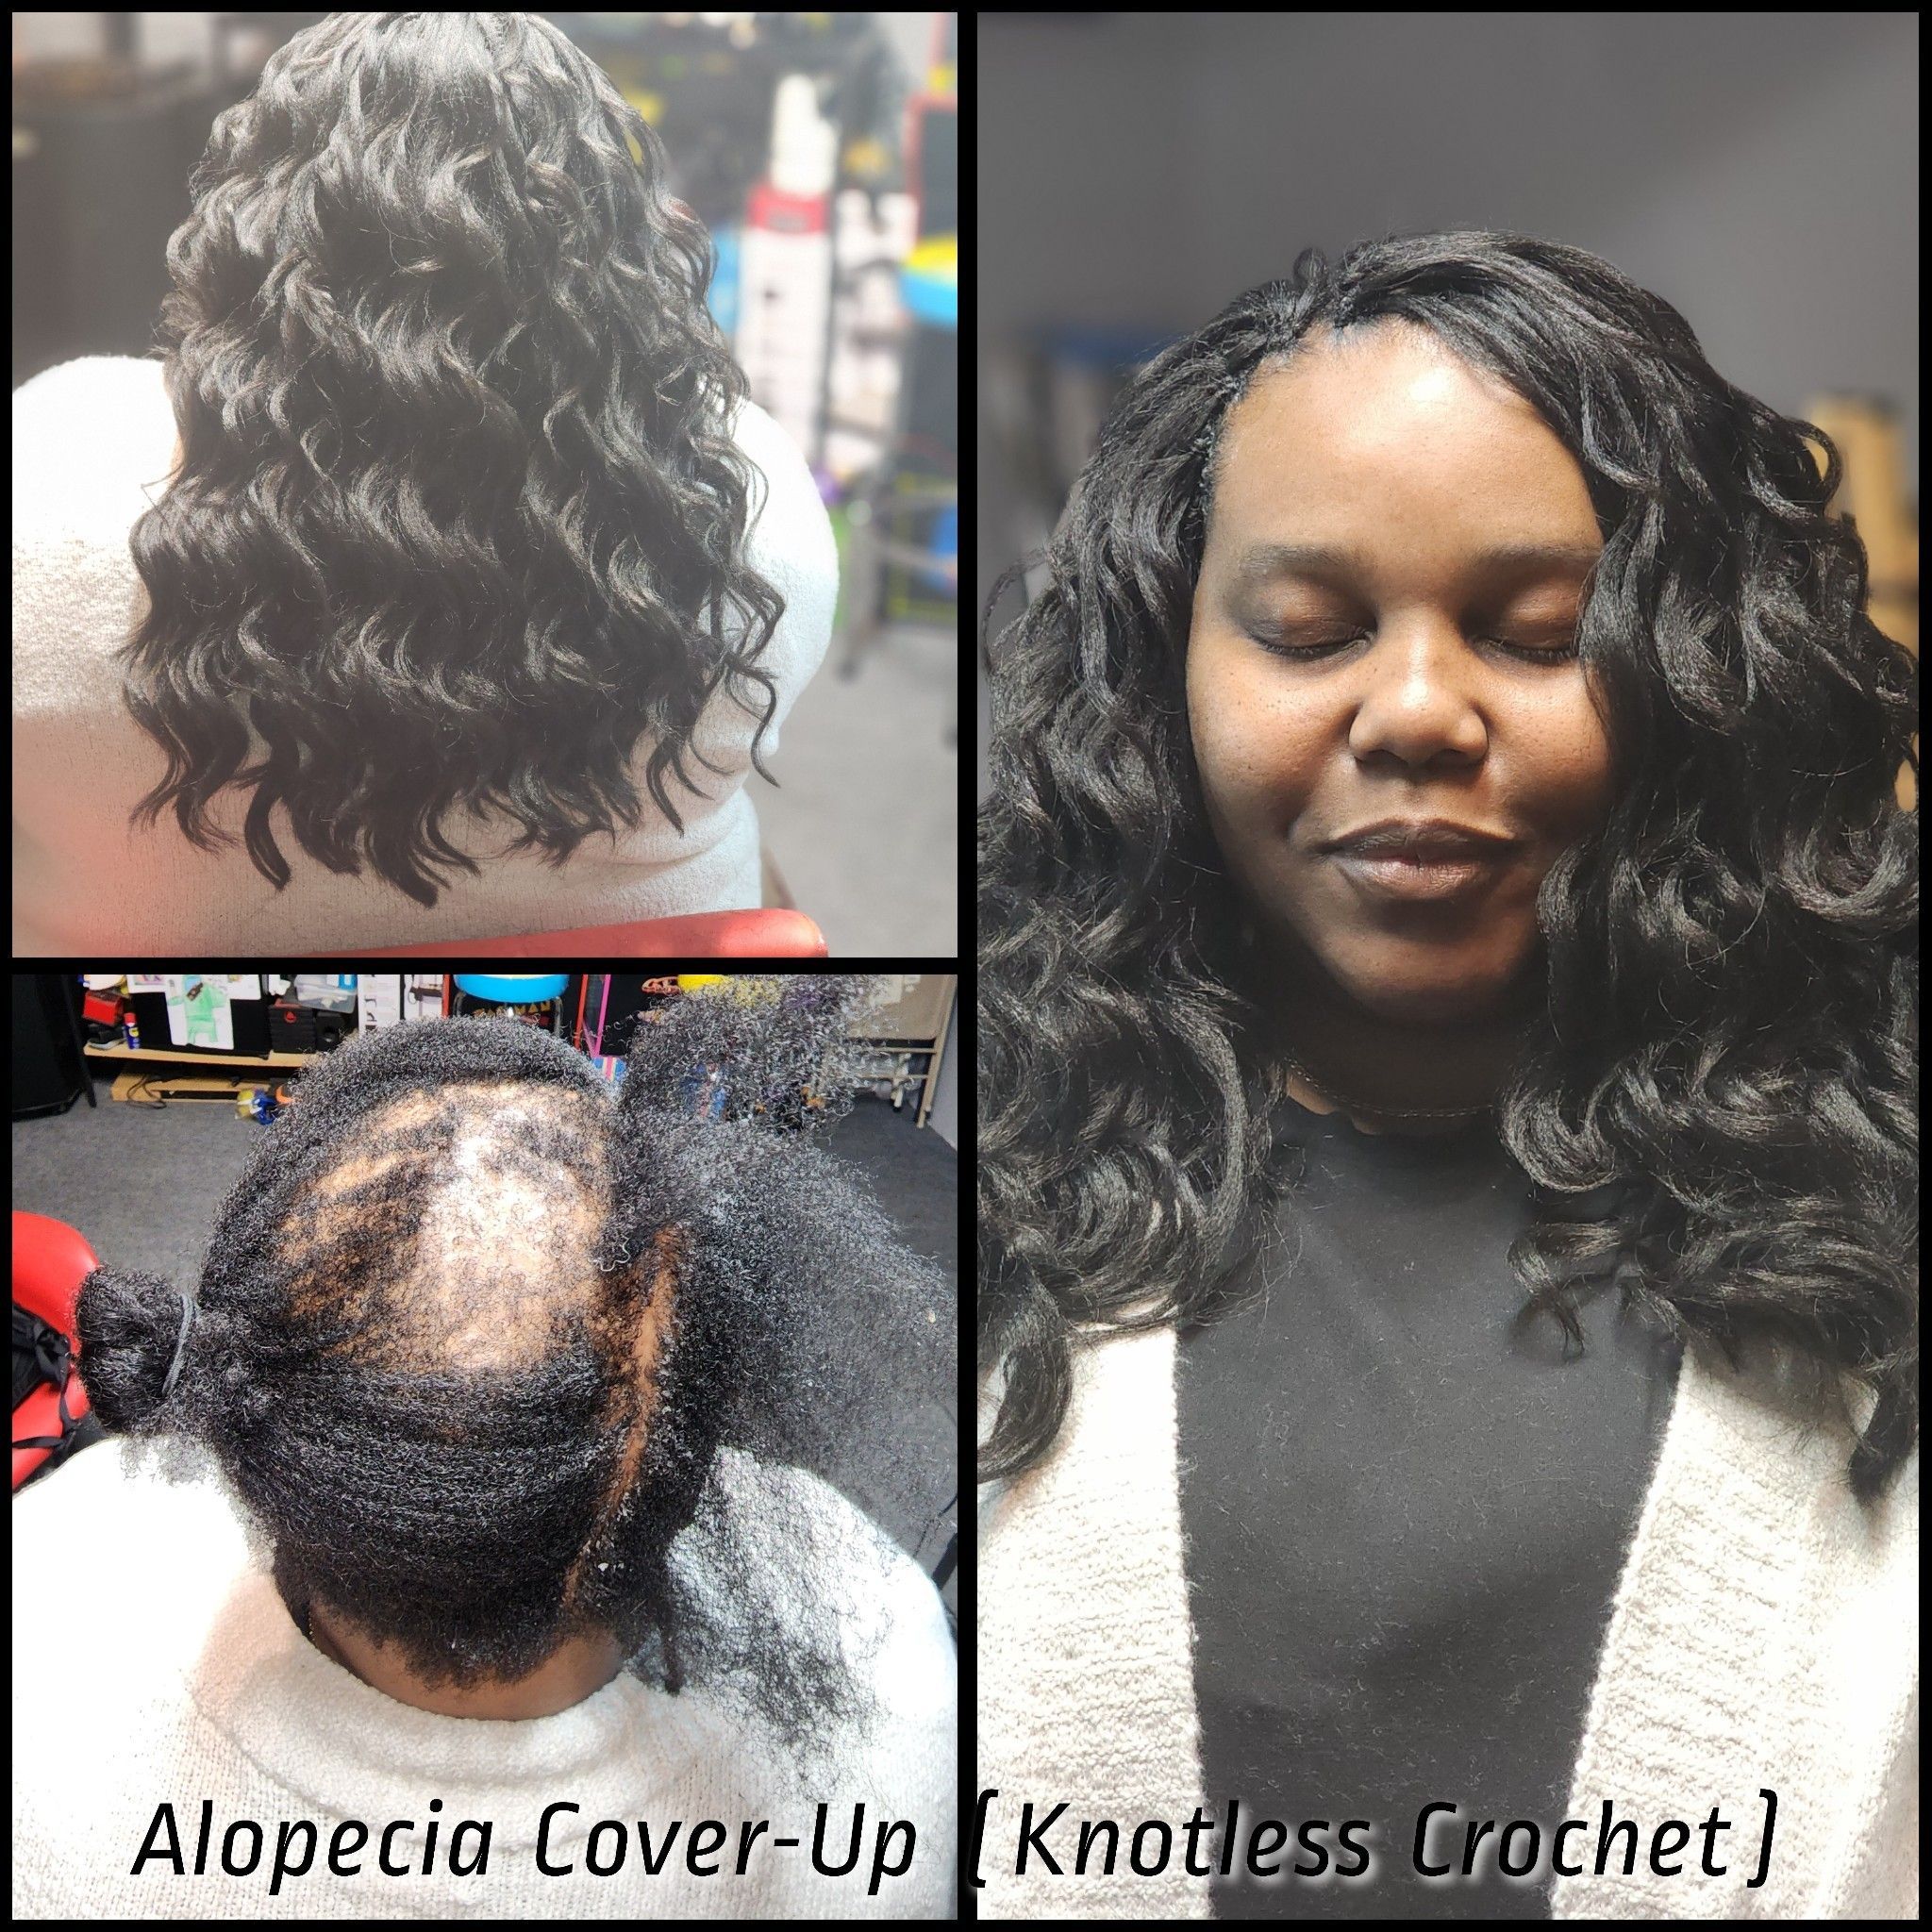 Alopecia Cover-Up (Knotless Crochet) portfolio